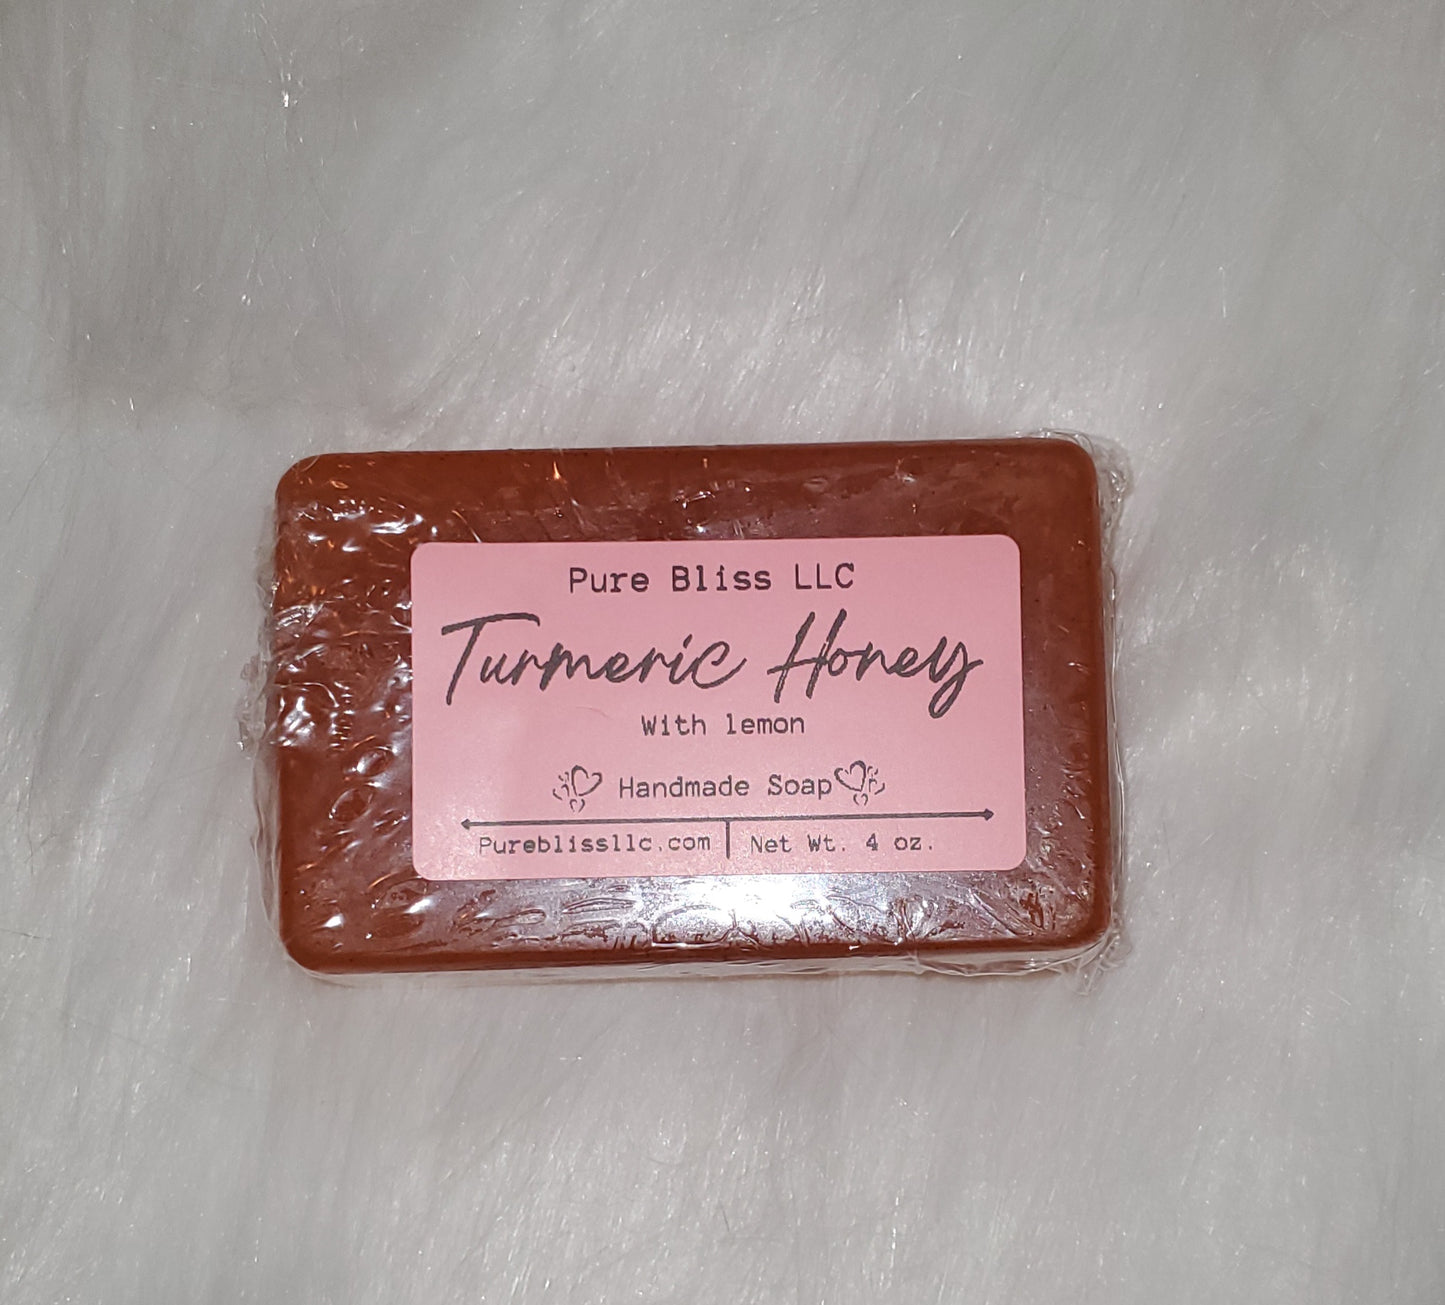 Specialty soap bars